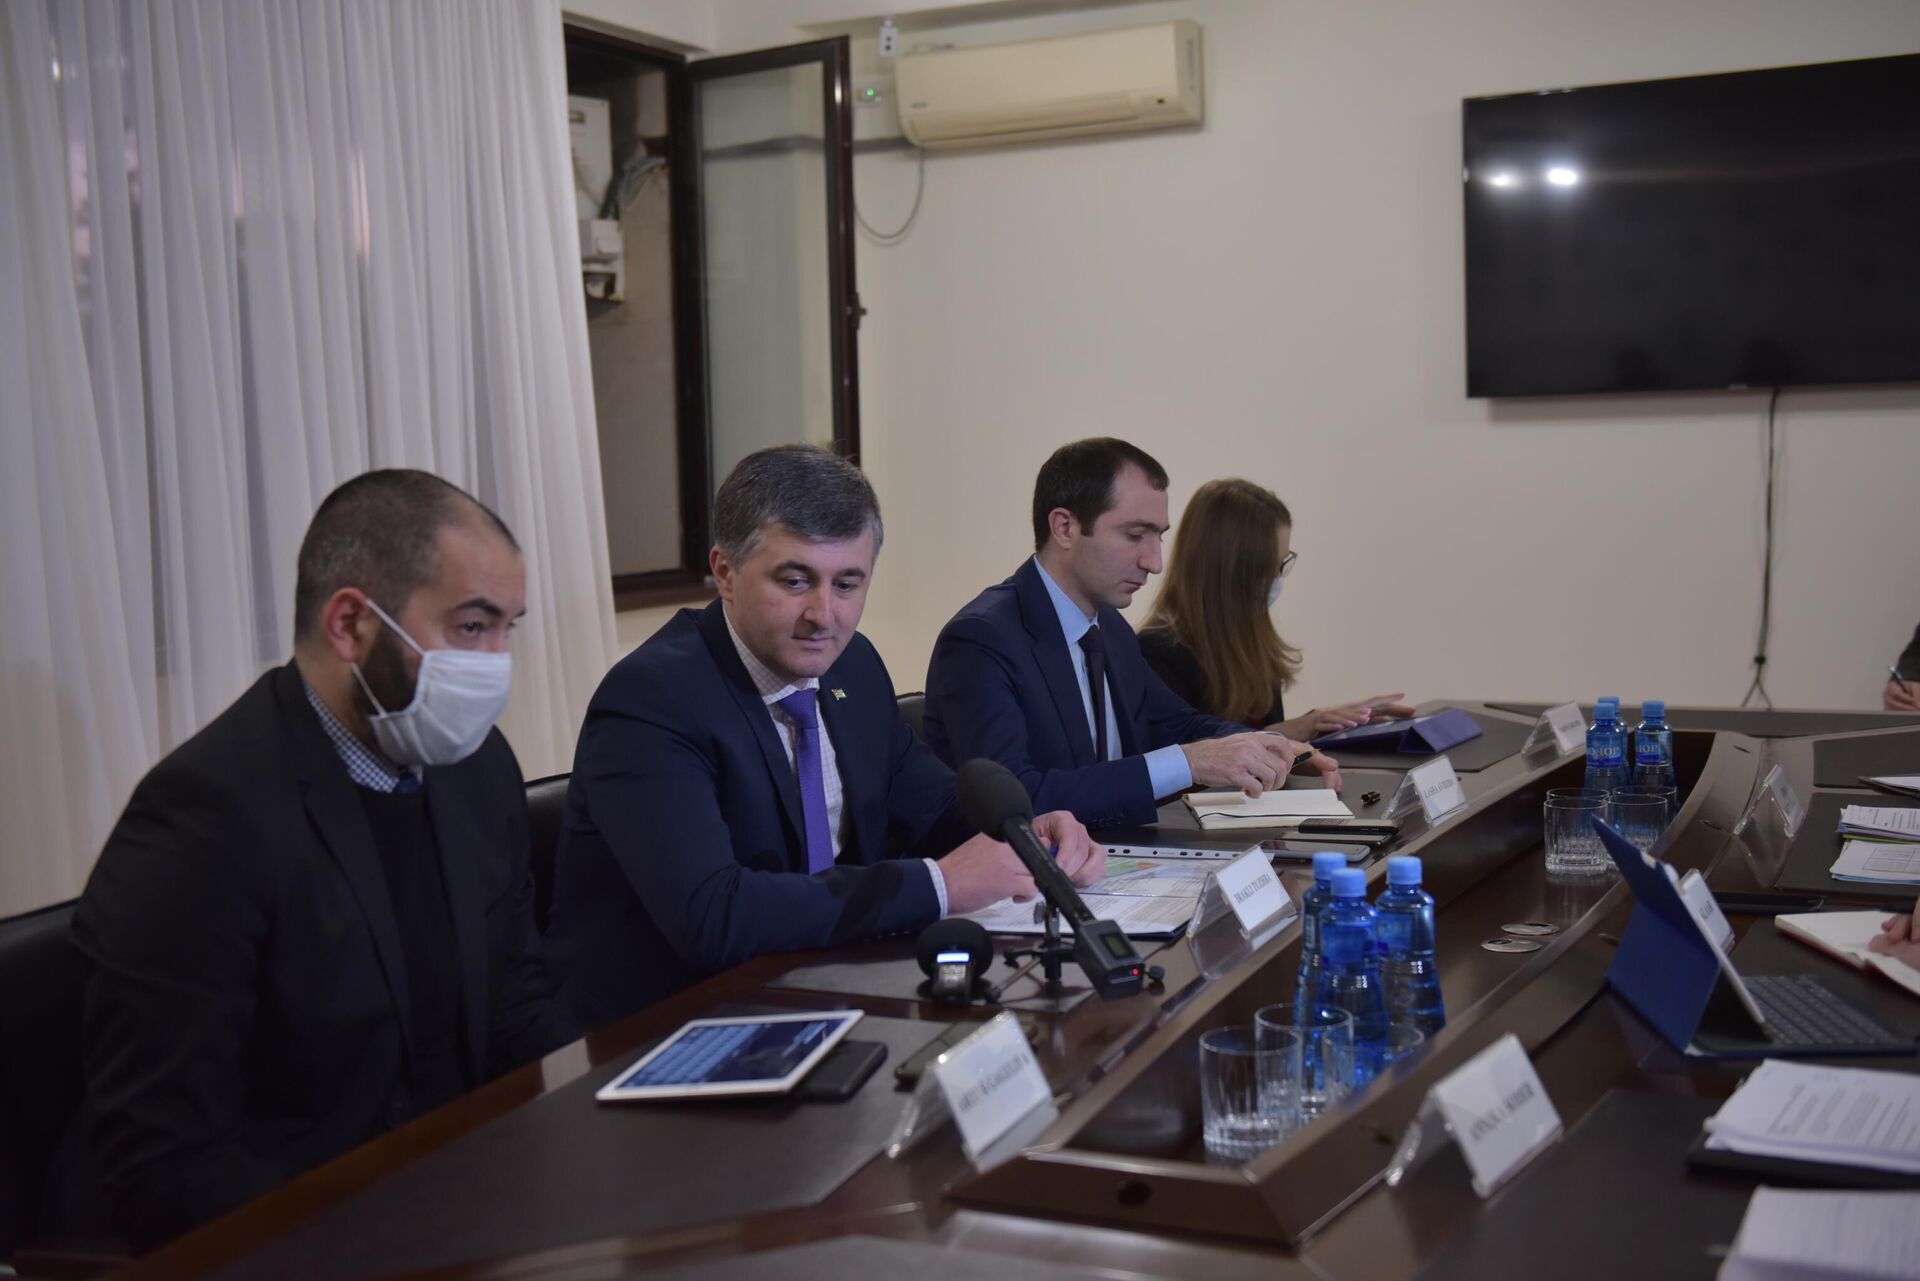 Сопредседатели Женевских дискуссий провели встречу в МИД Абхазии  - Sputnik Абхазия, 1920, 16.11.2021